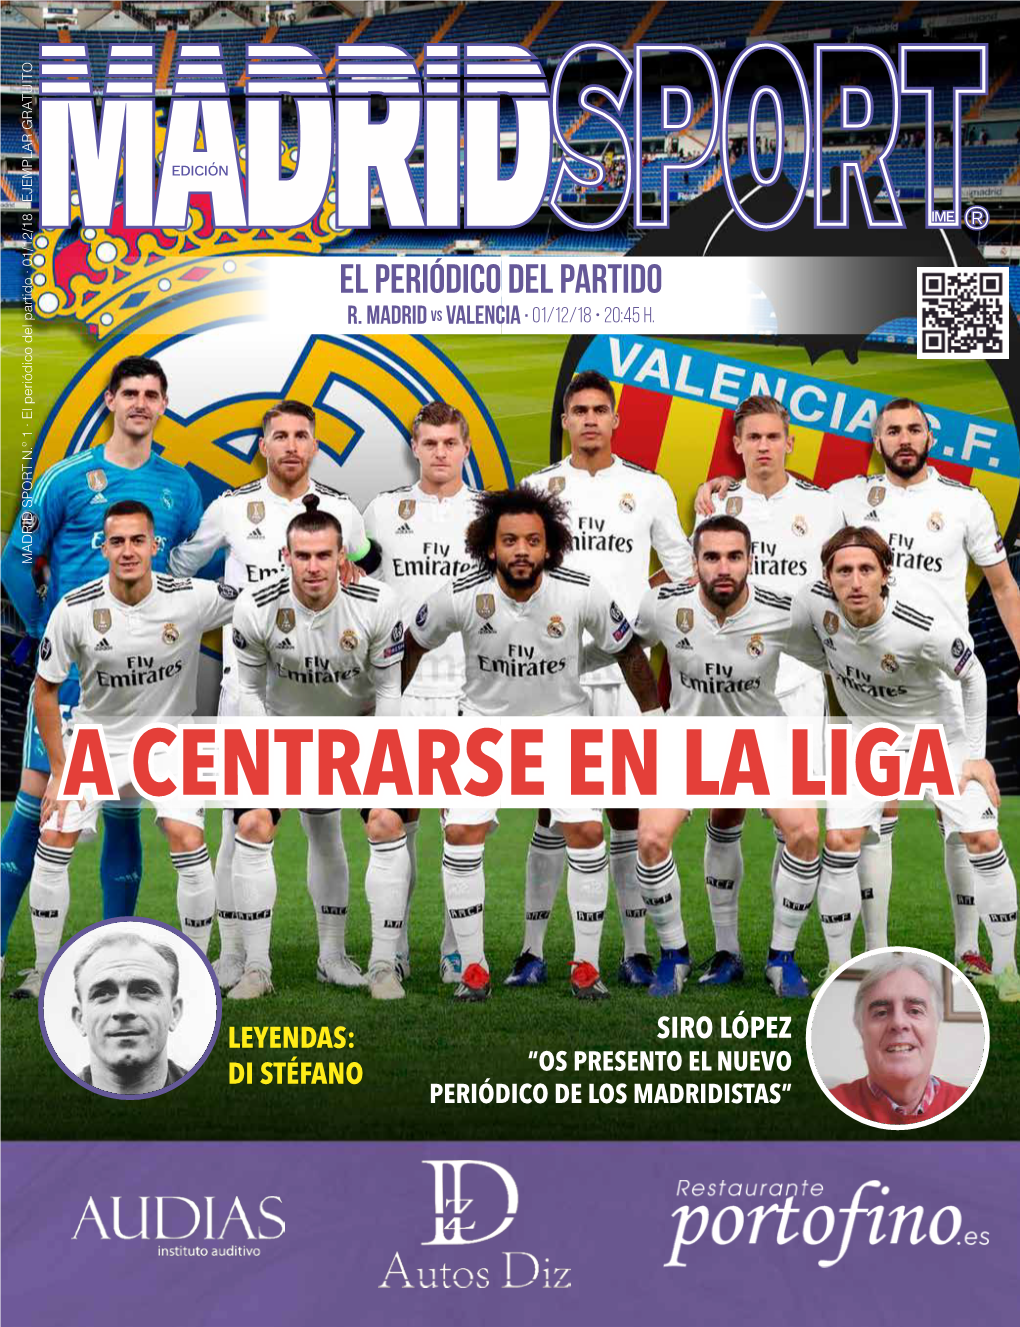 Di Stéfano “Os Presento El Nuevo Periódico De Los Madridistas” Nuevo